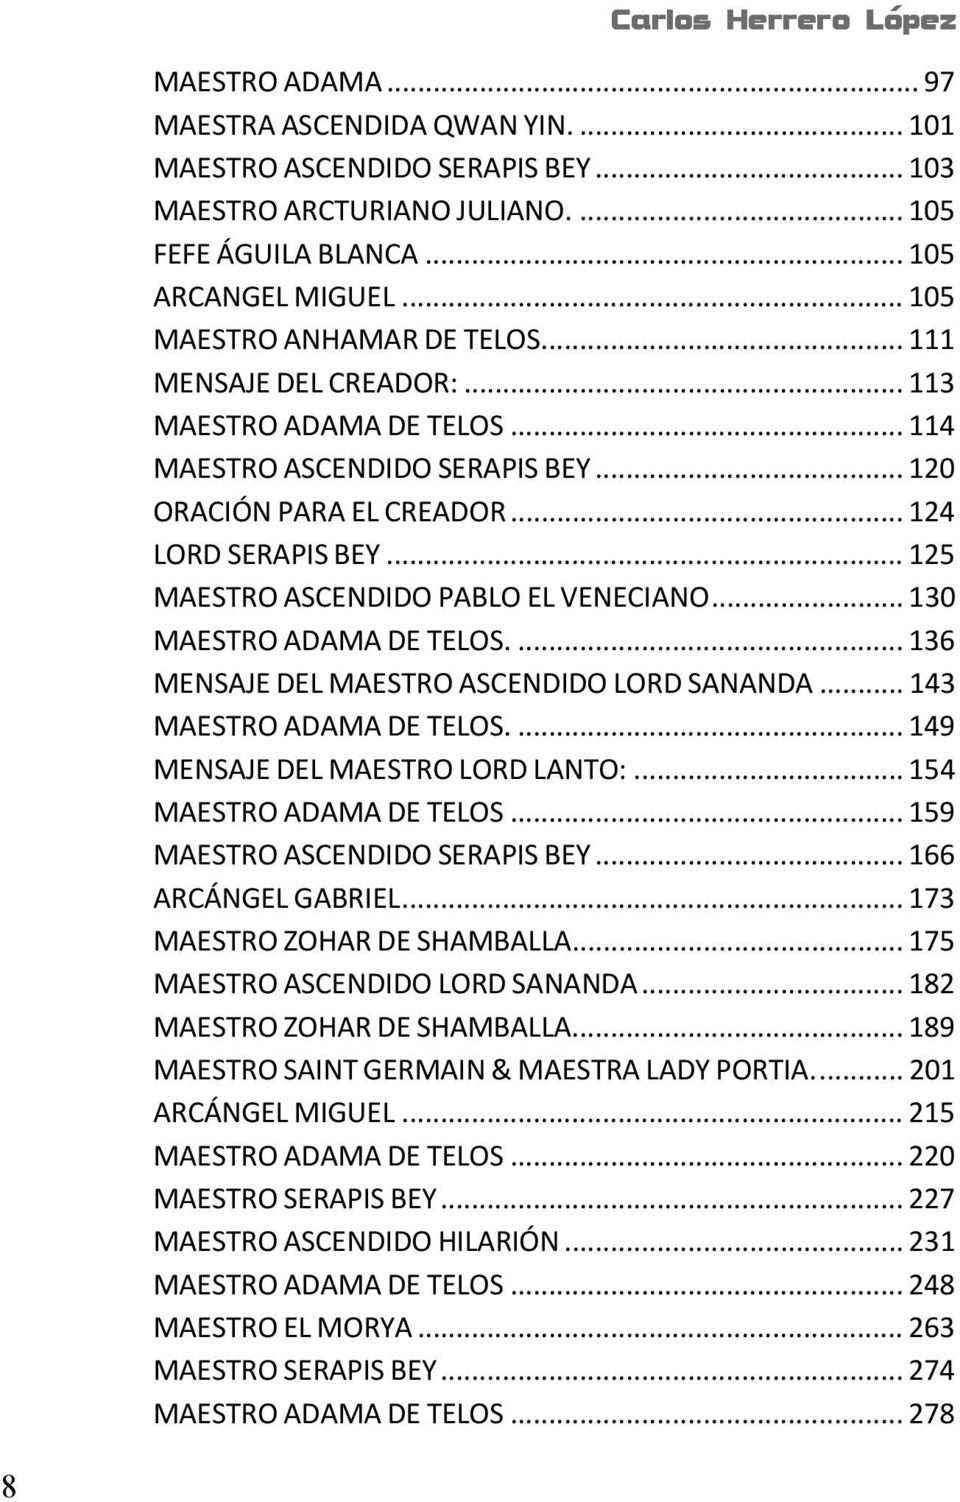 .. 125 MAESTRO ASCENDIDO PABLO EL VENECIANO... 130 MAESTRO ADAMA DE TELOS.... 136 MENSAJE DEL MAESTRO ASCENDIDO LORD SANANDA... 143 MAESTRO ADAMA DE TELOS.... 149 MENSAJE DEL MAESTRO LORD LANTO:.